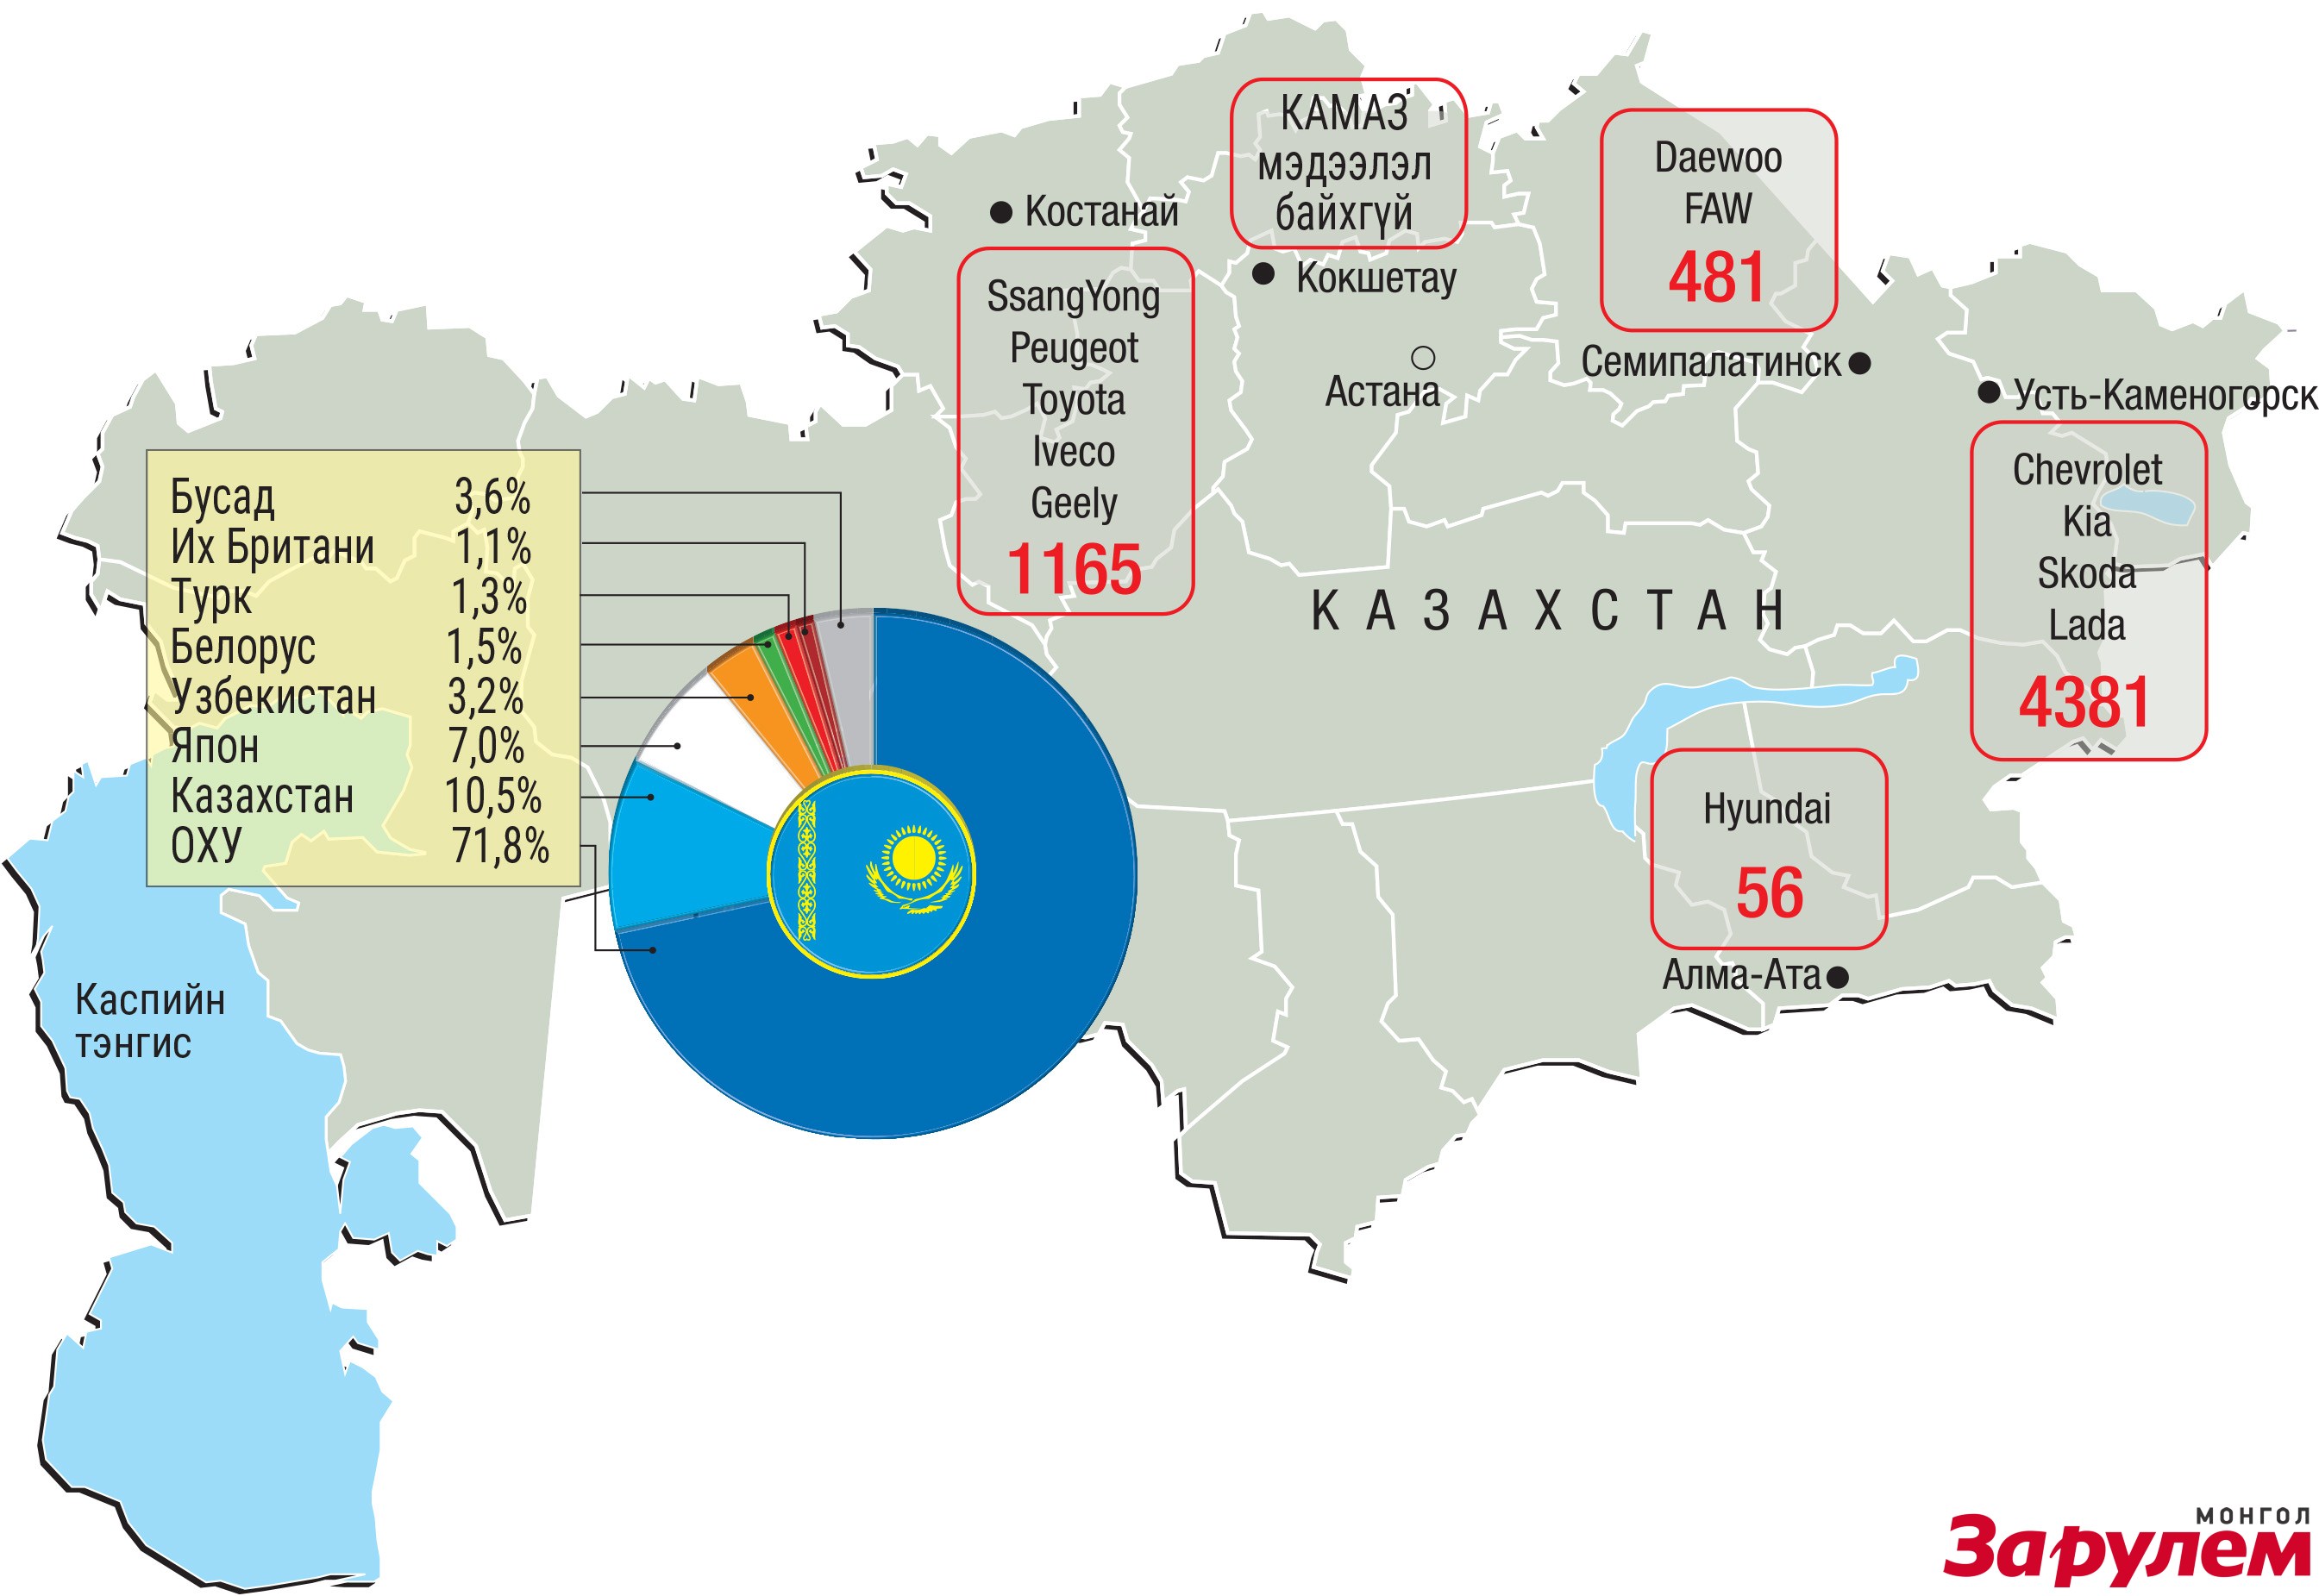 Казахстаны автомашинүйлдвэрлэлийн тоо 2015 оны эхний улирлын байдлаар.